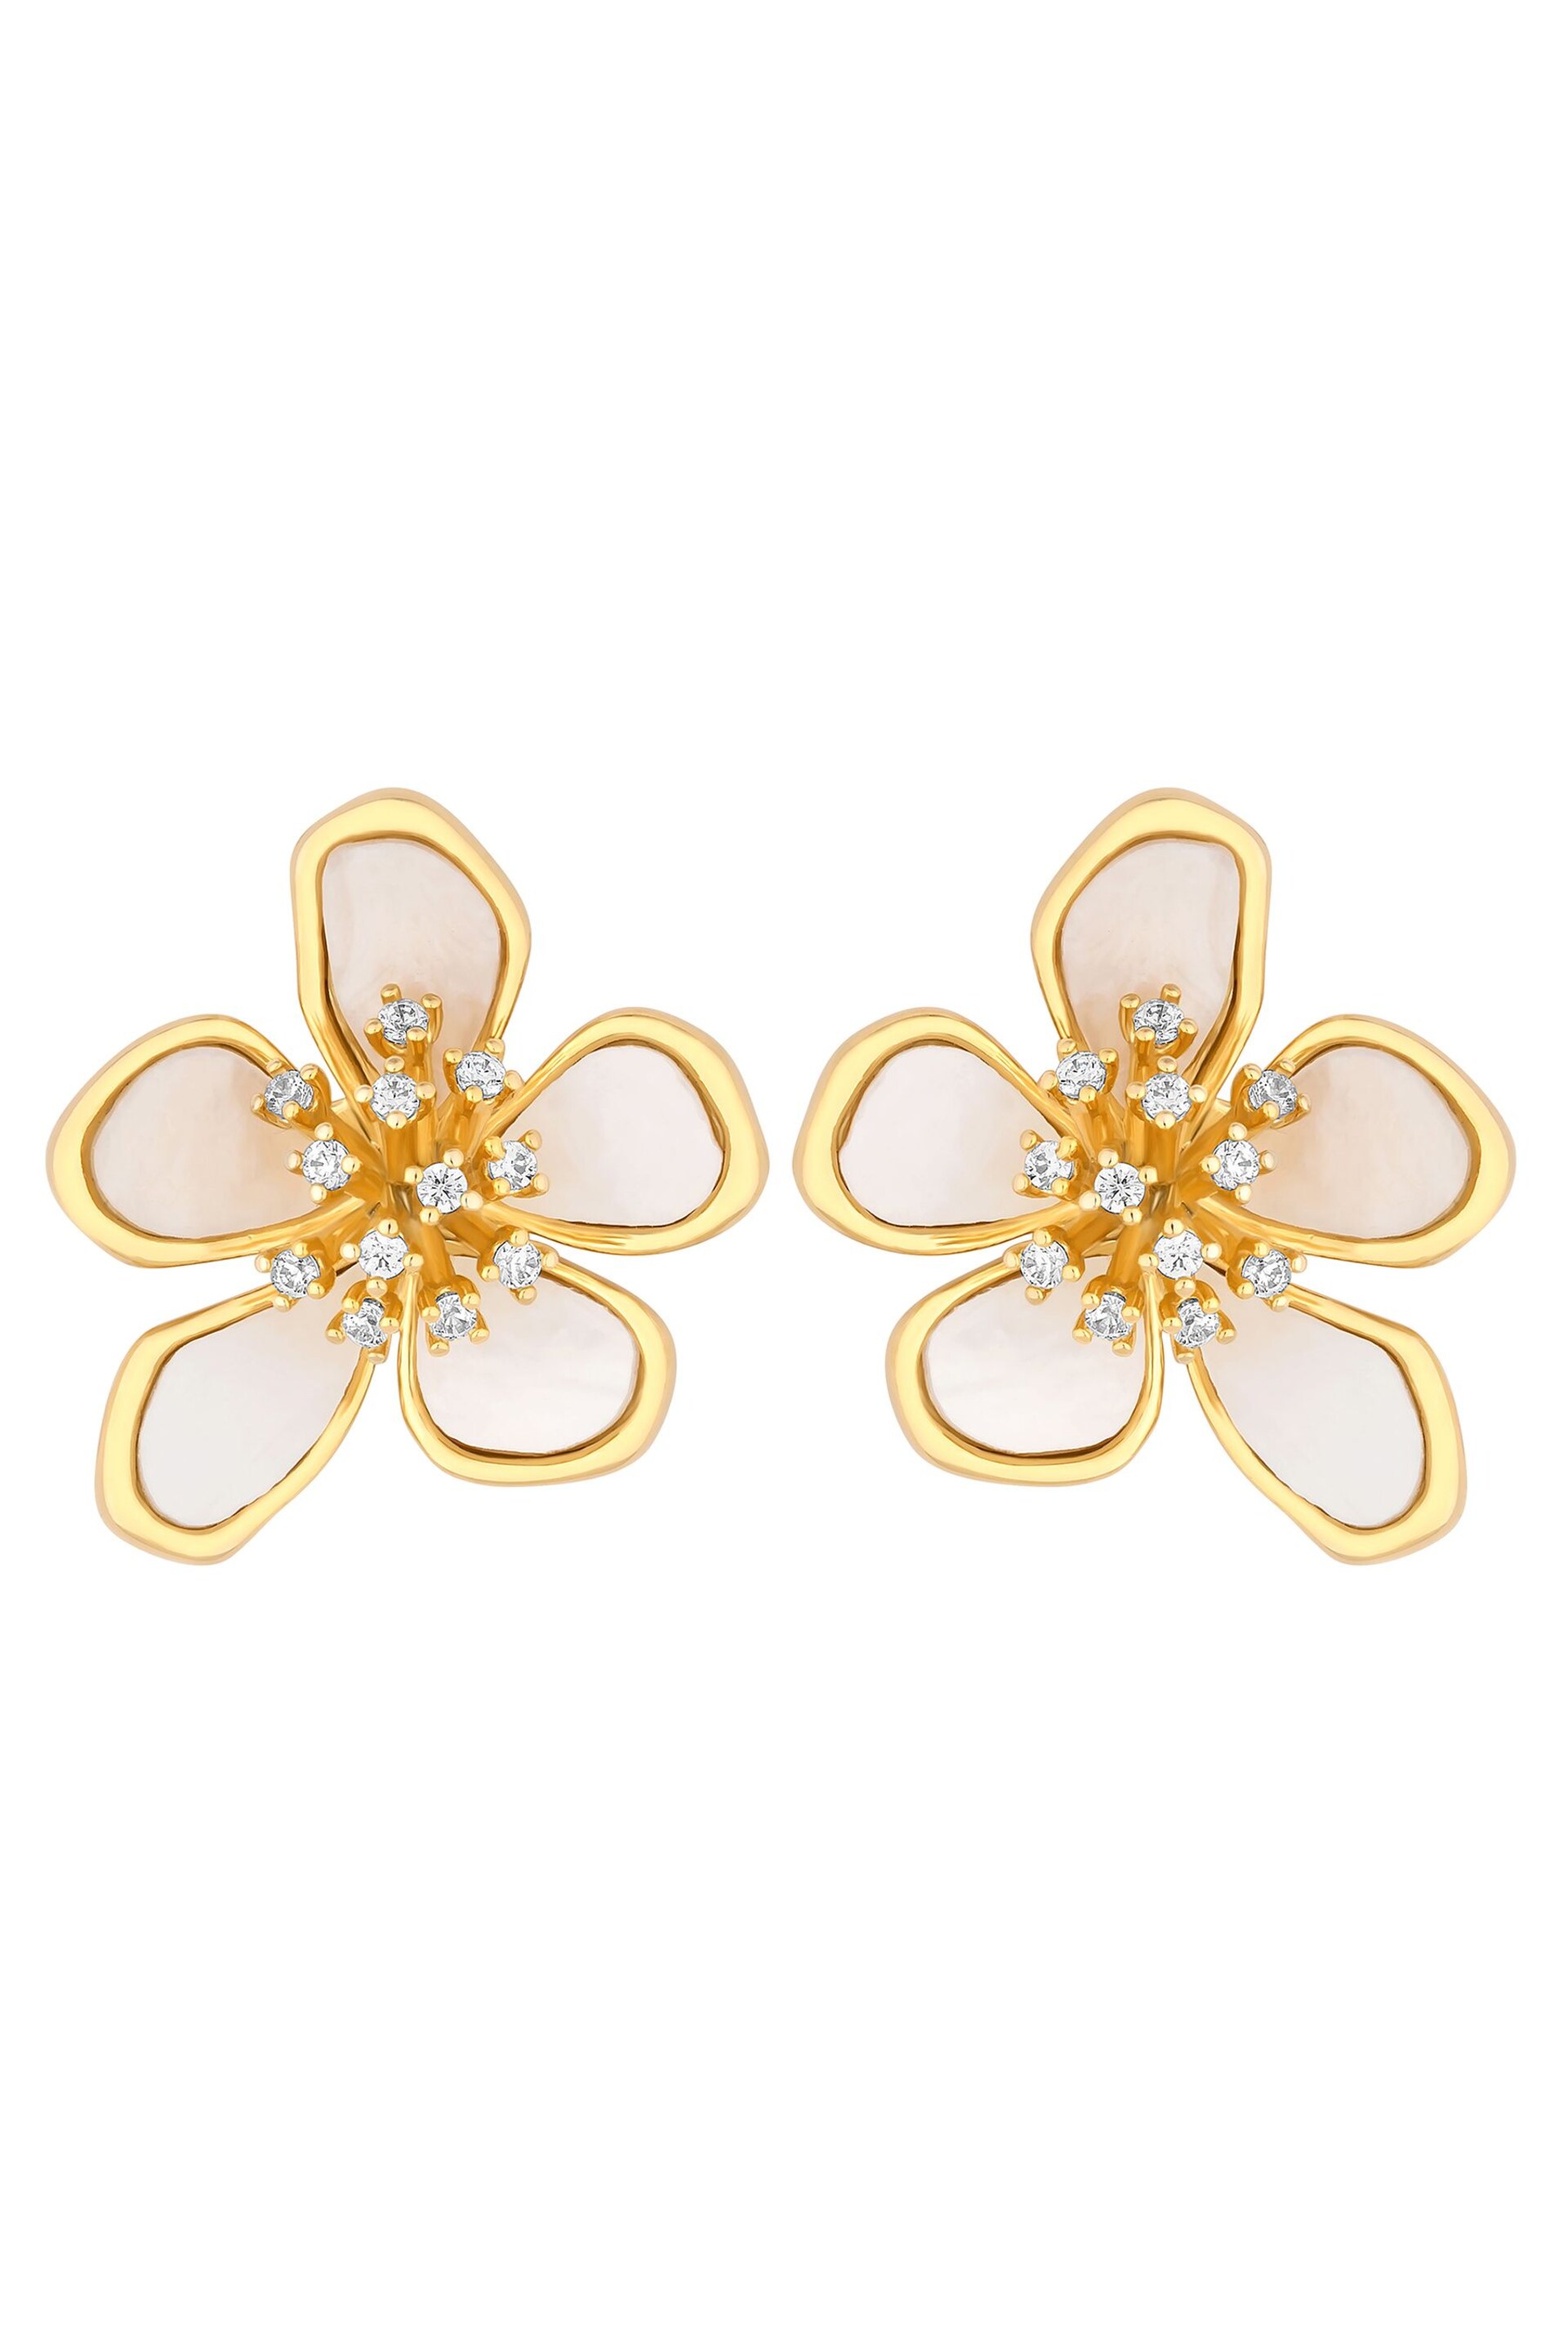 Jon Richard Gold Statement Flower Earrings - Image 3 of 3